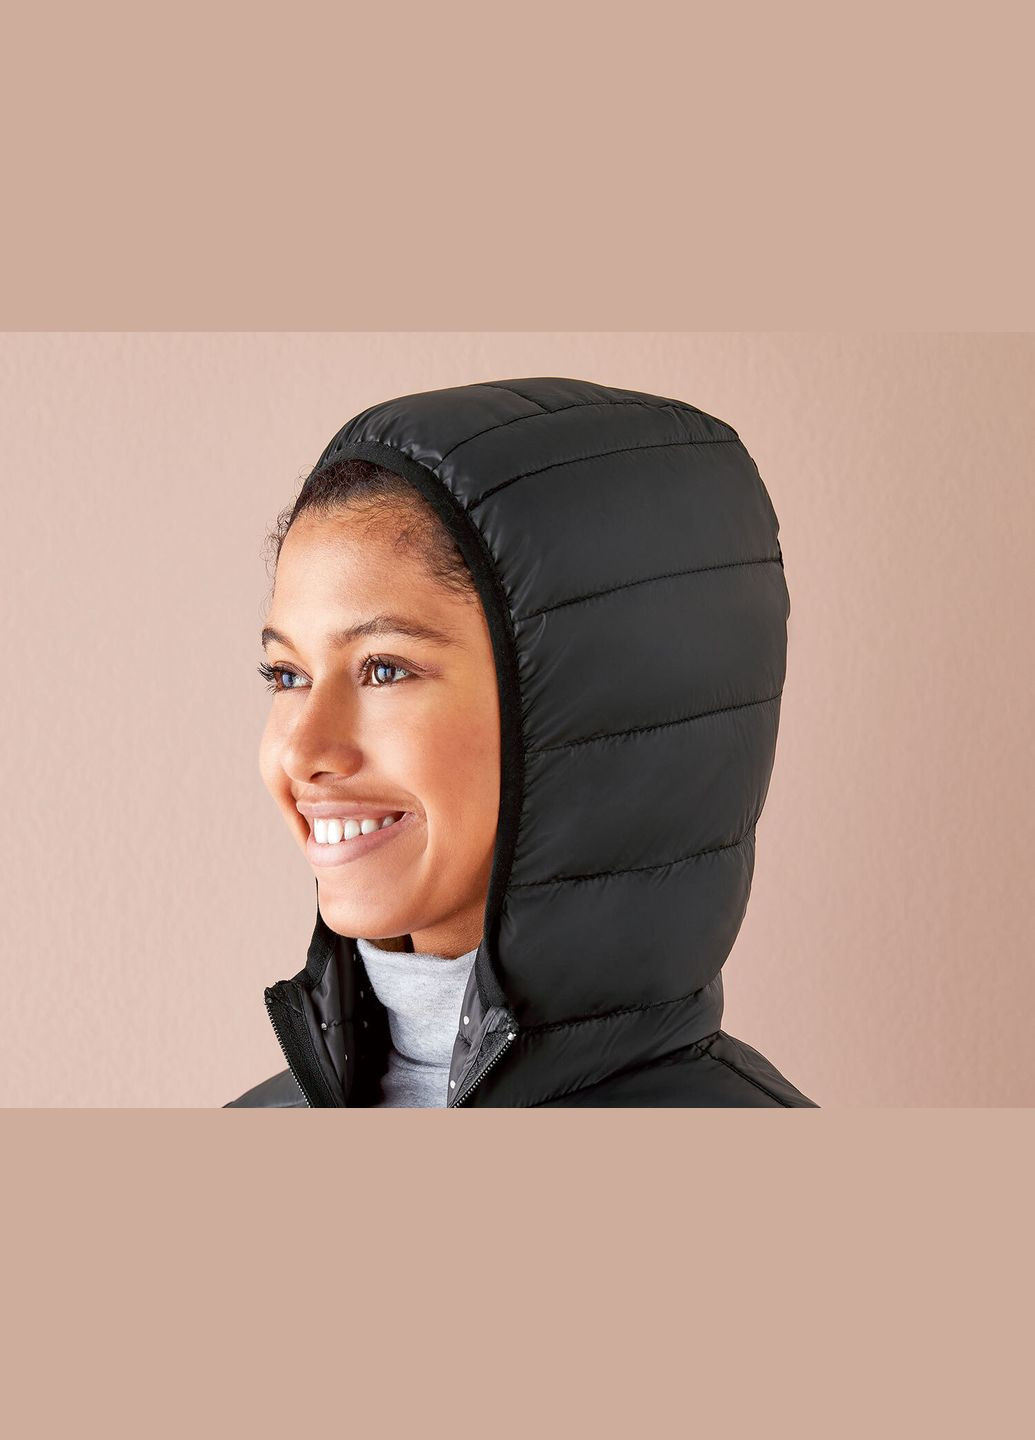 Черная демисезонная куртка демисезонная для беременных и слингокуртка 3 в 1 для женщины bionic-finish® eco 357573 34(xs) куртка-пиджак Esmara